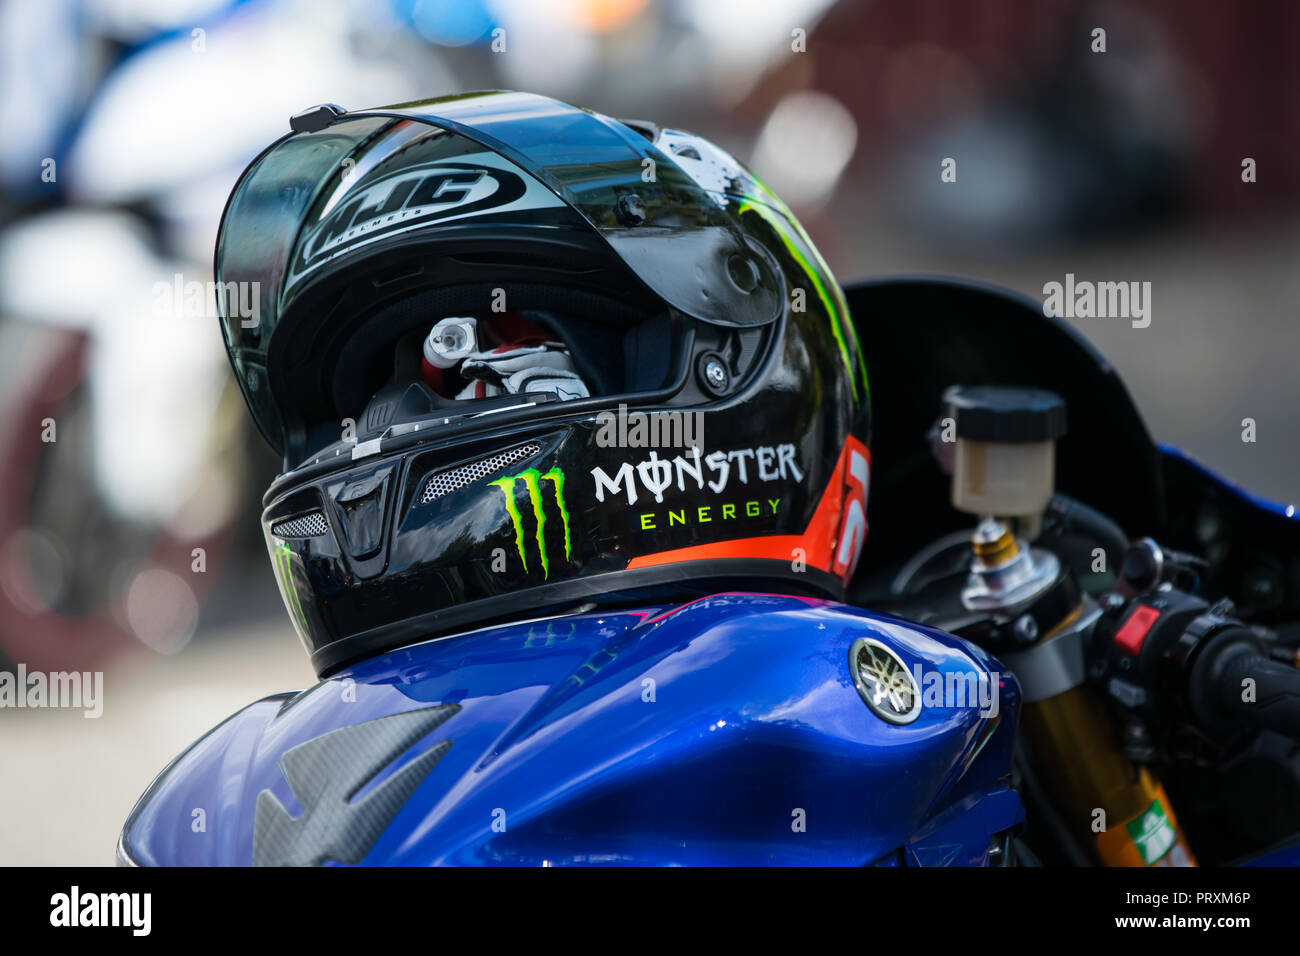 Vue de la Yamaha r1 et réservoir moto HJC helm allongé sur elle avec l'annonce de Monster Energy Banque D'Images